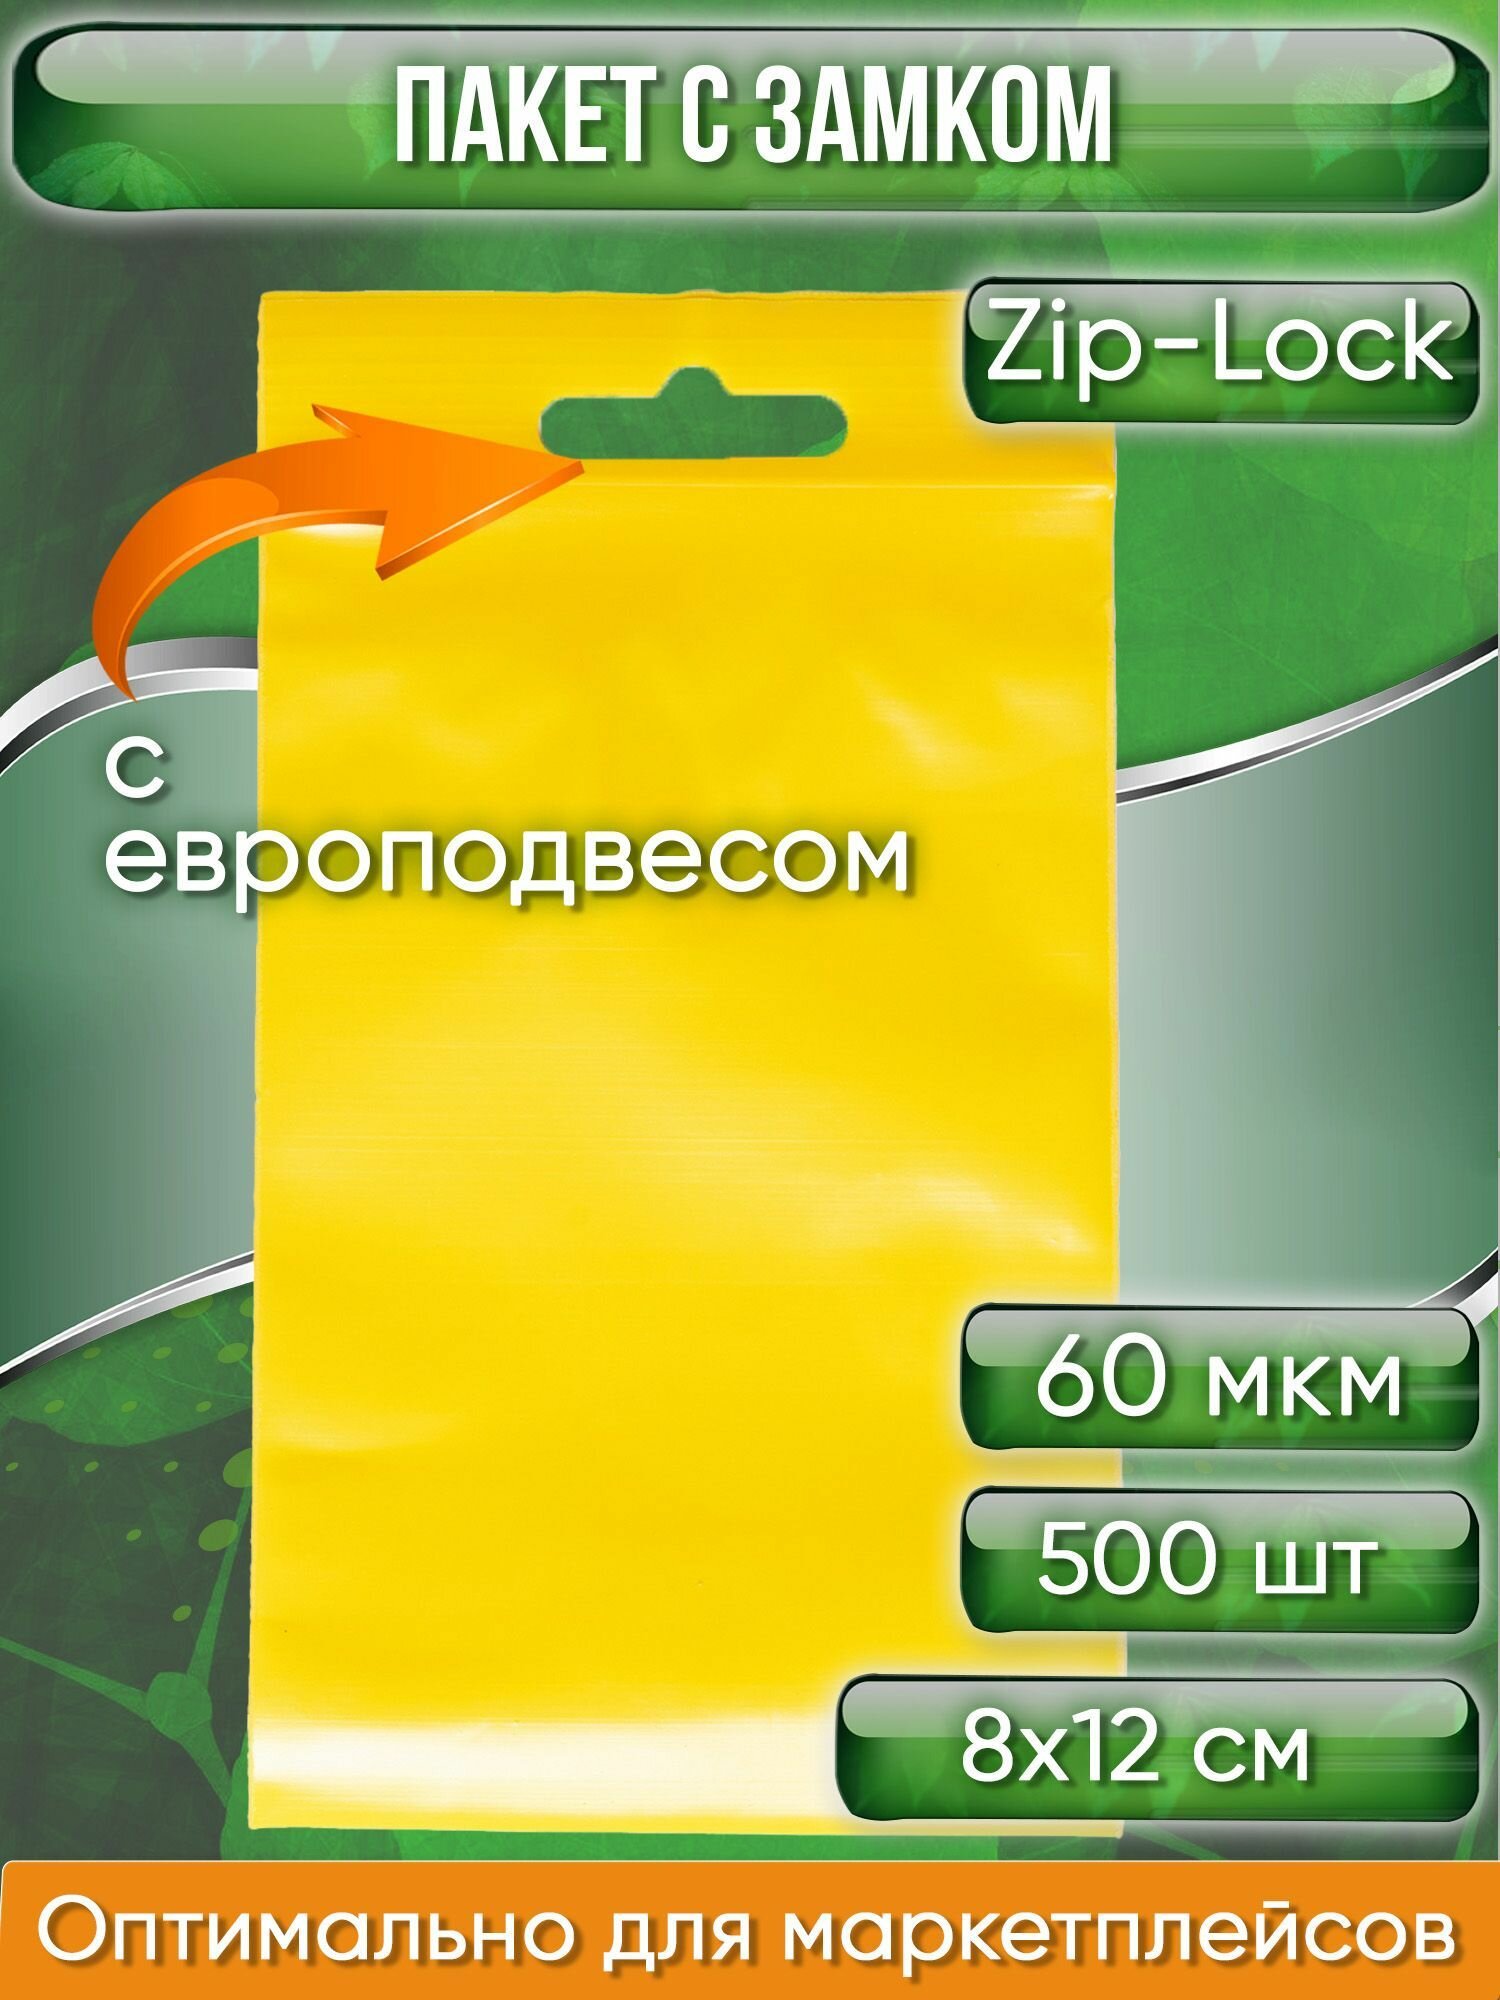 Пакет с замком Zip-Lock (Зип лок), 8х12 см, 60 мкм, с европодвесом, сверхпрочный, желтый, 500 шт.